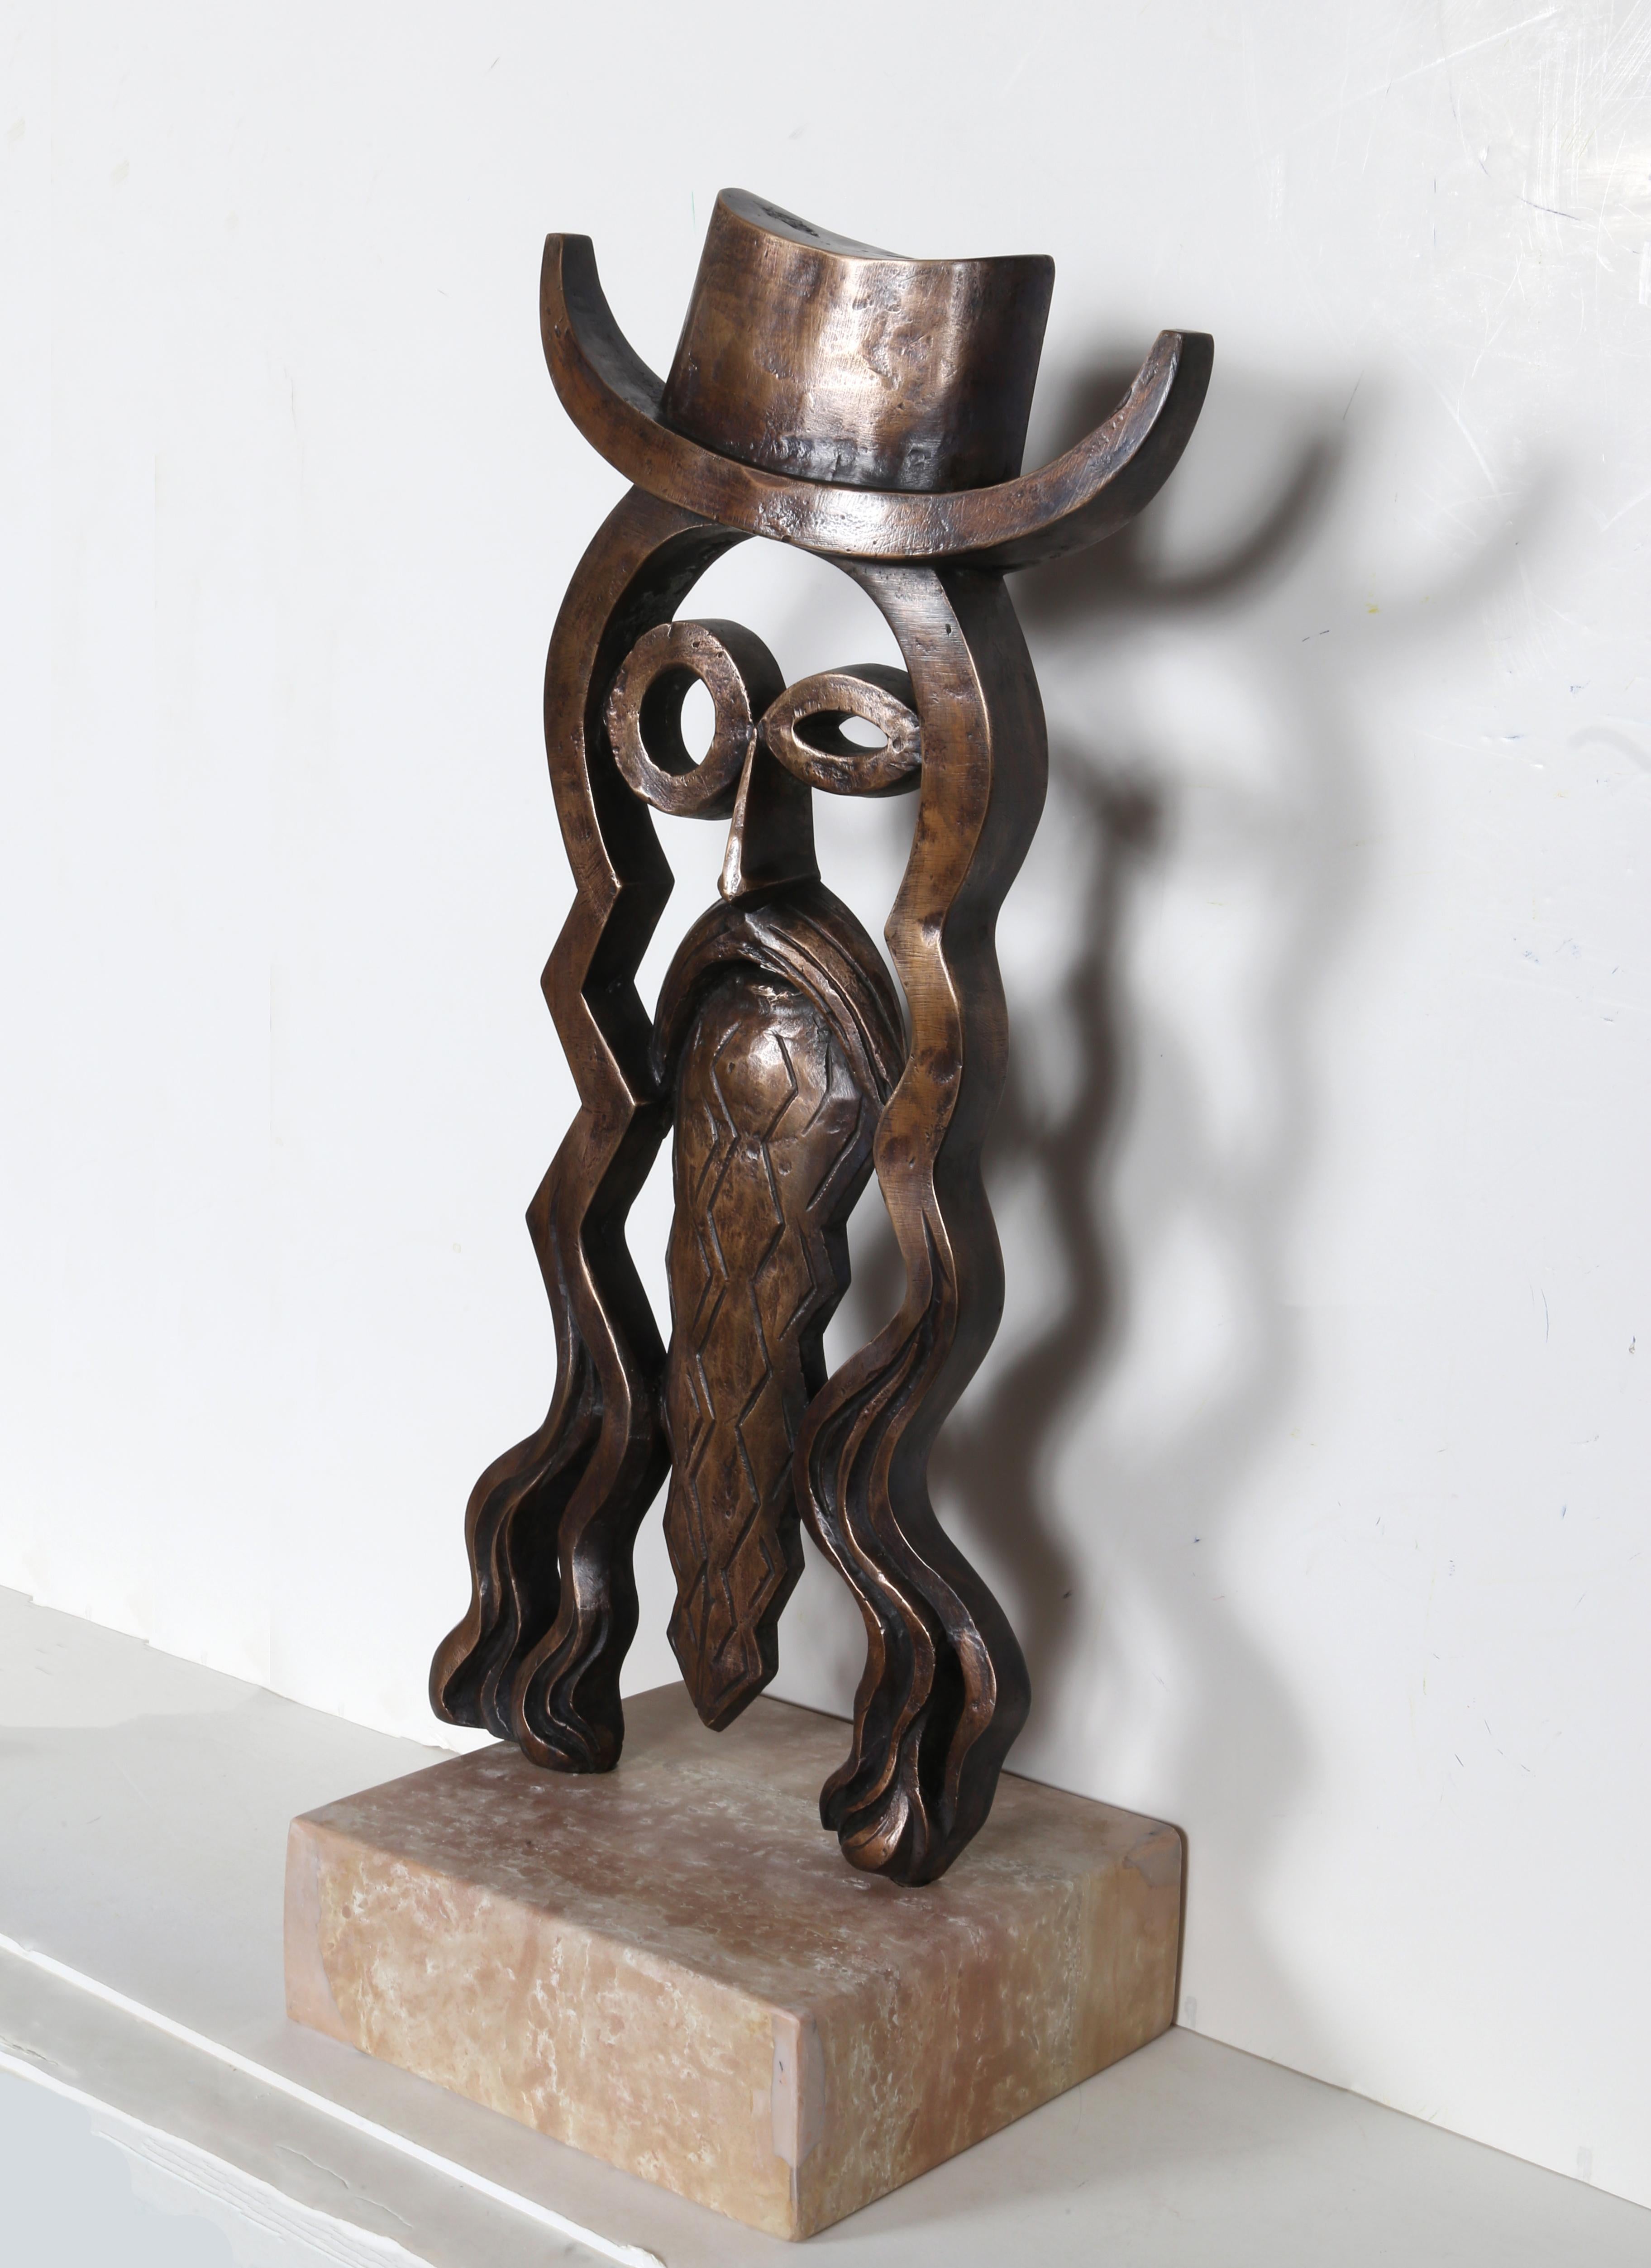 Artistics : Constantin Antonovici, Roumain (1911 - 2002)
Titre : Hippie - Homme
Moyen : Sculpture en bronze, signature, date inscrite
Taille : 23,5 x 11,5 x 1 po (59,69 x 29,21 x 2,54 cm)
Base en marbre : 3 x 10 x 8.5 pouces

Sculpture originale en